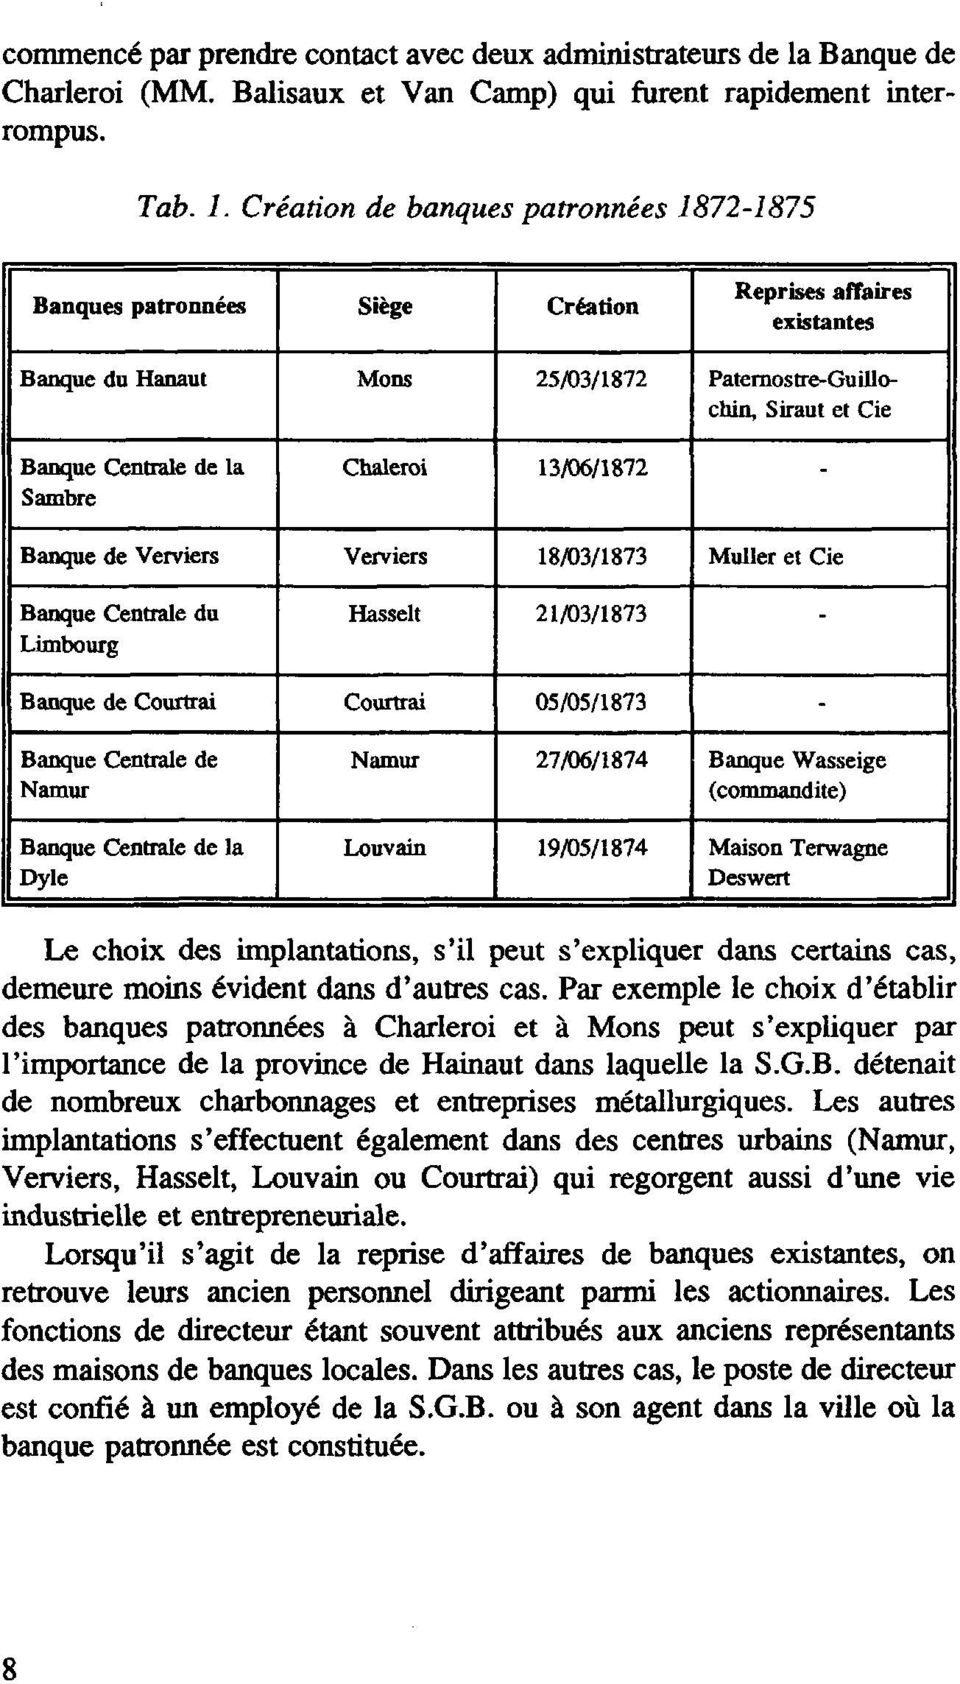 ambre Chaleroi 13/06/1872 - Banque de Verviers Verviers 18/03/1873 Muller et Cie Banque Centrale du Limbourg Hasselt 21/03/1873 - Banque de Courtrai Courtrai 05/05/1873 - Banque Centrale de Namur